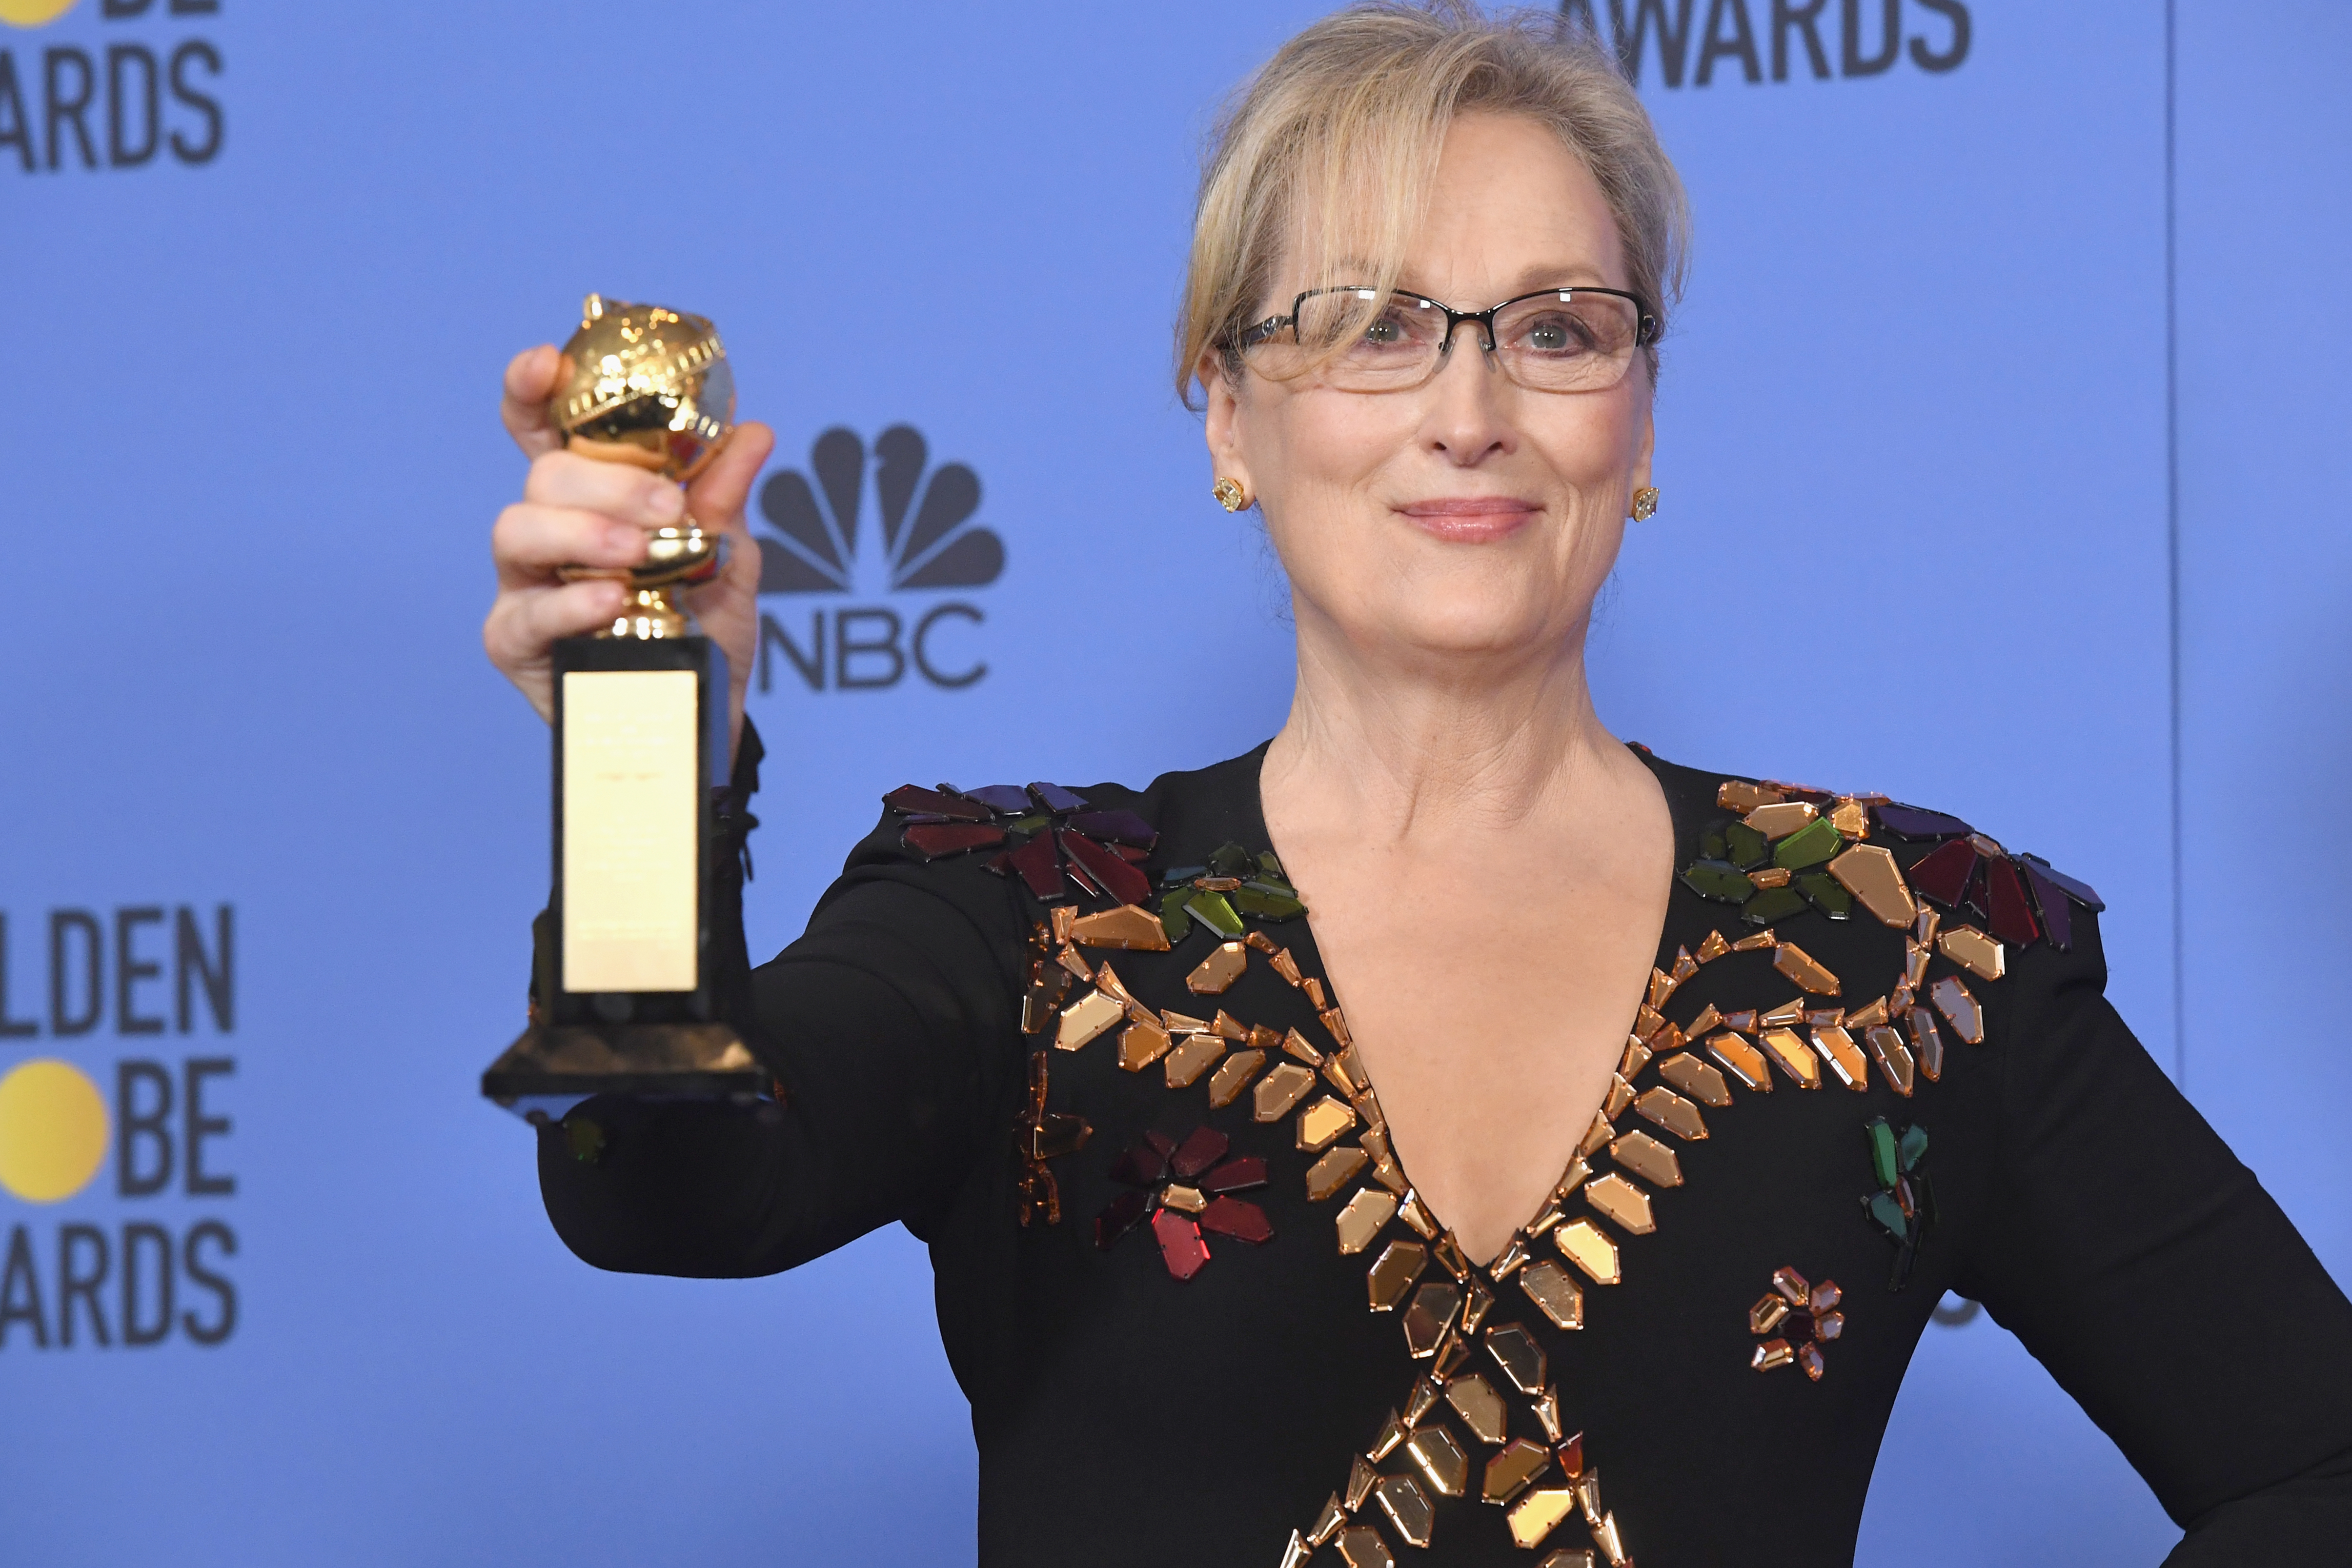 Trump nemrég még kedvenc színésznői között emlegette a beszólása után túlértékeltnek nevezett Meryl Streepet